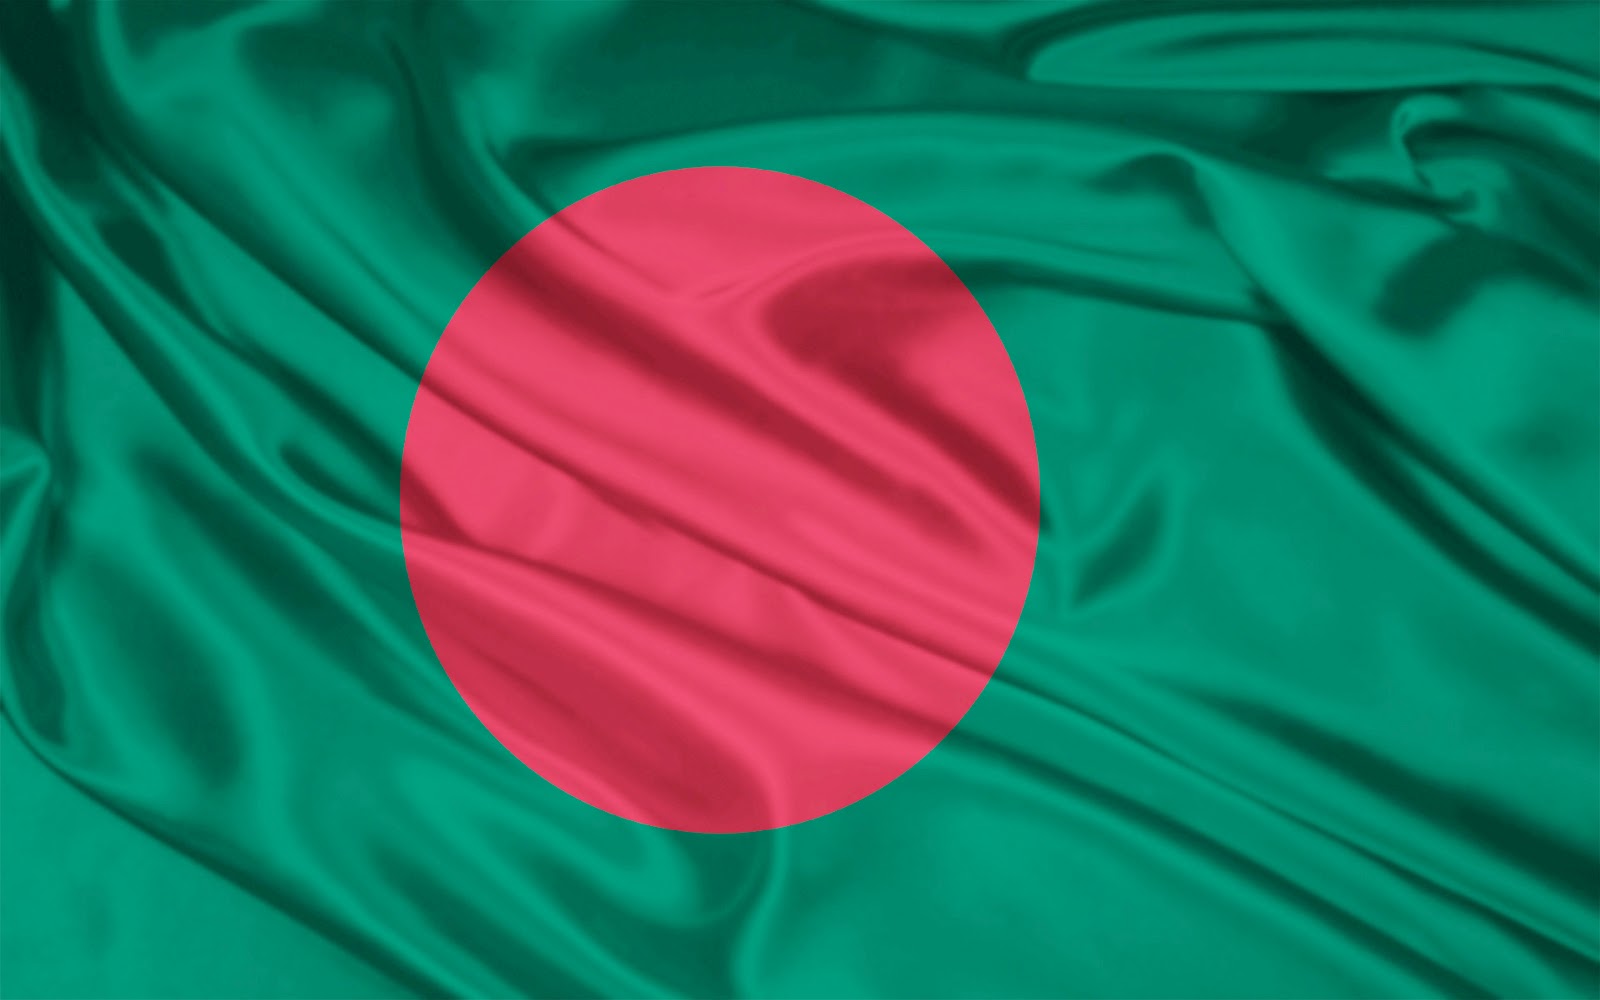 http://1.bp.blogspot.com/--bVGkEC9d4M/T_tC9Bk2UiI/AAAAAAAAADk/ub4CtflUXPo/s1600/Bangladeshi+Flag.jpg